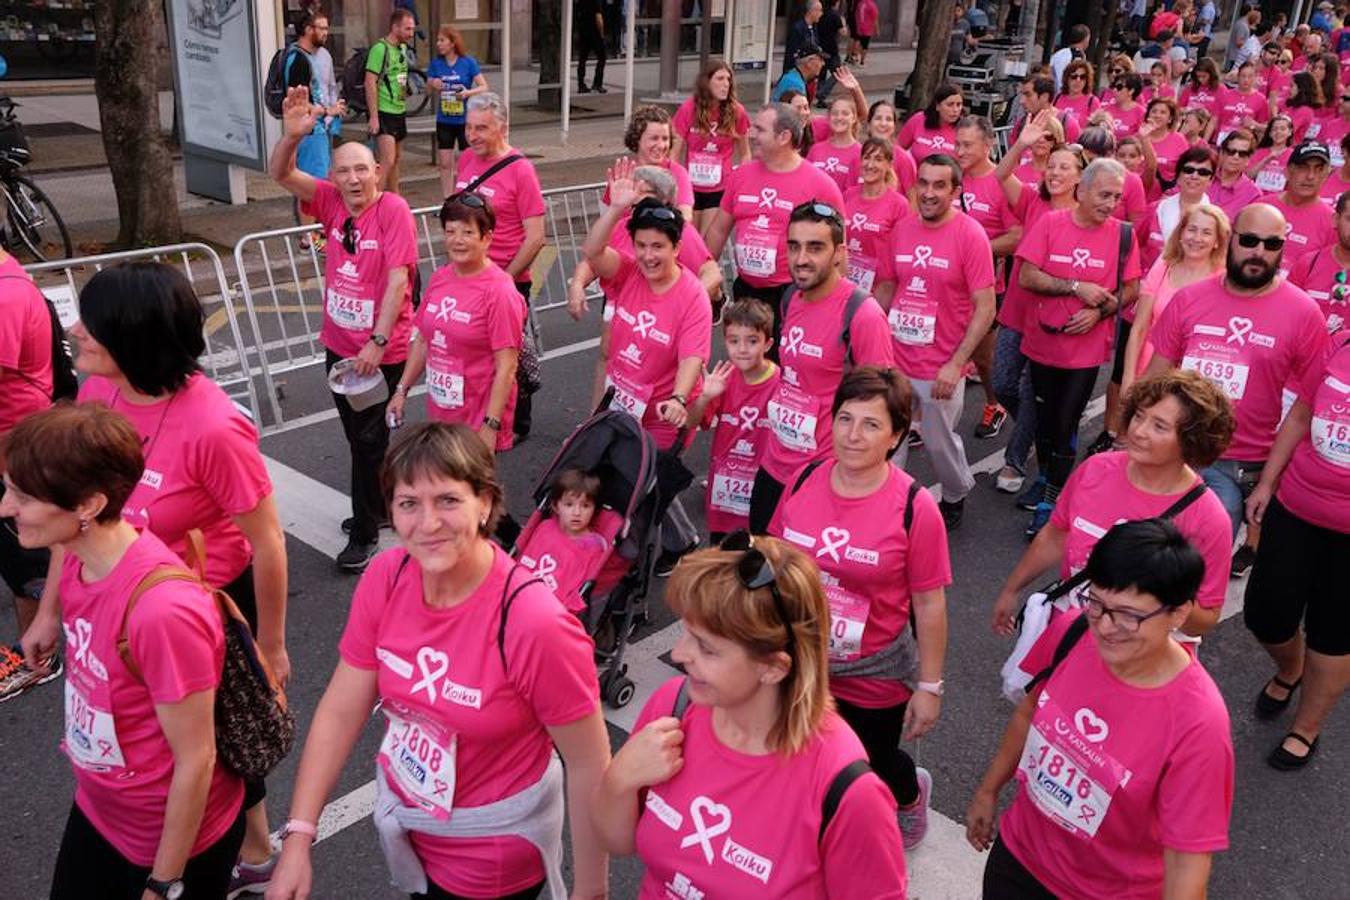 2.600 personas han participado este domingo en San Sebastián en la marcha 5k Katxalin, en solidaridad con las personas afectadas por el cáncer de mama